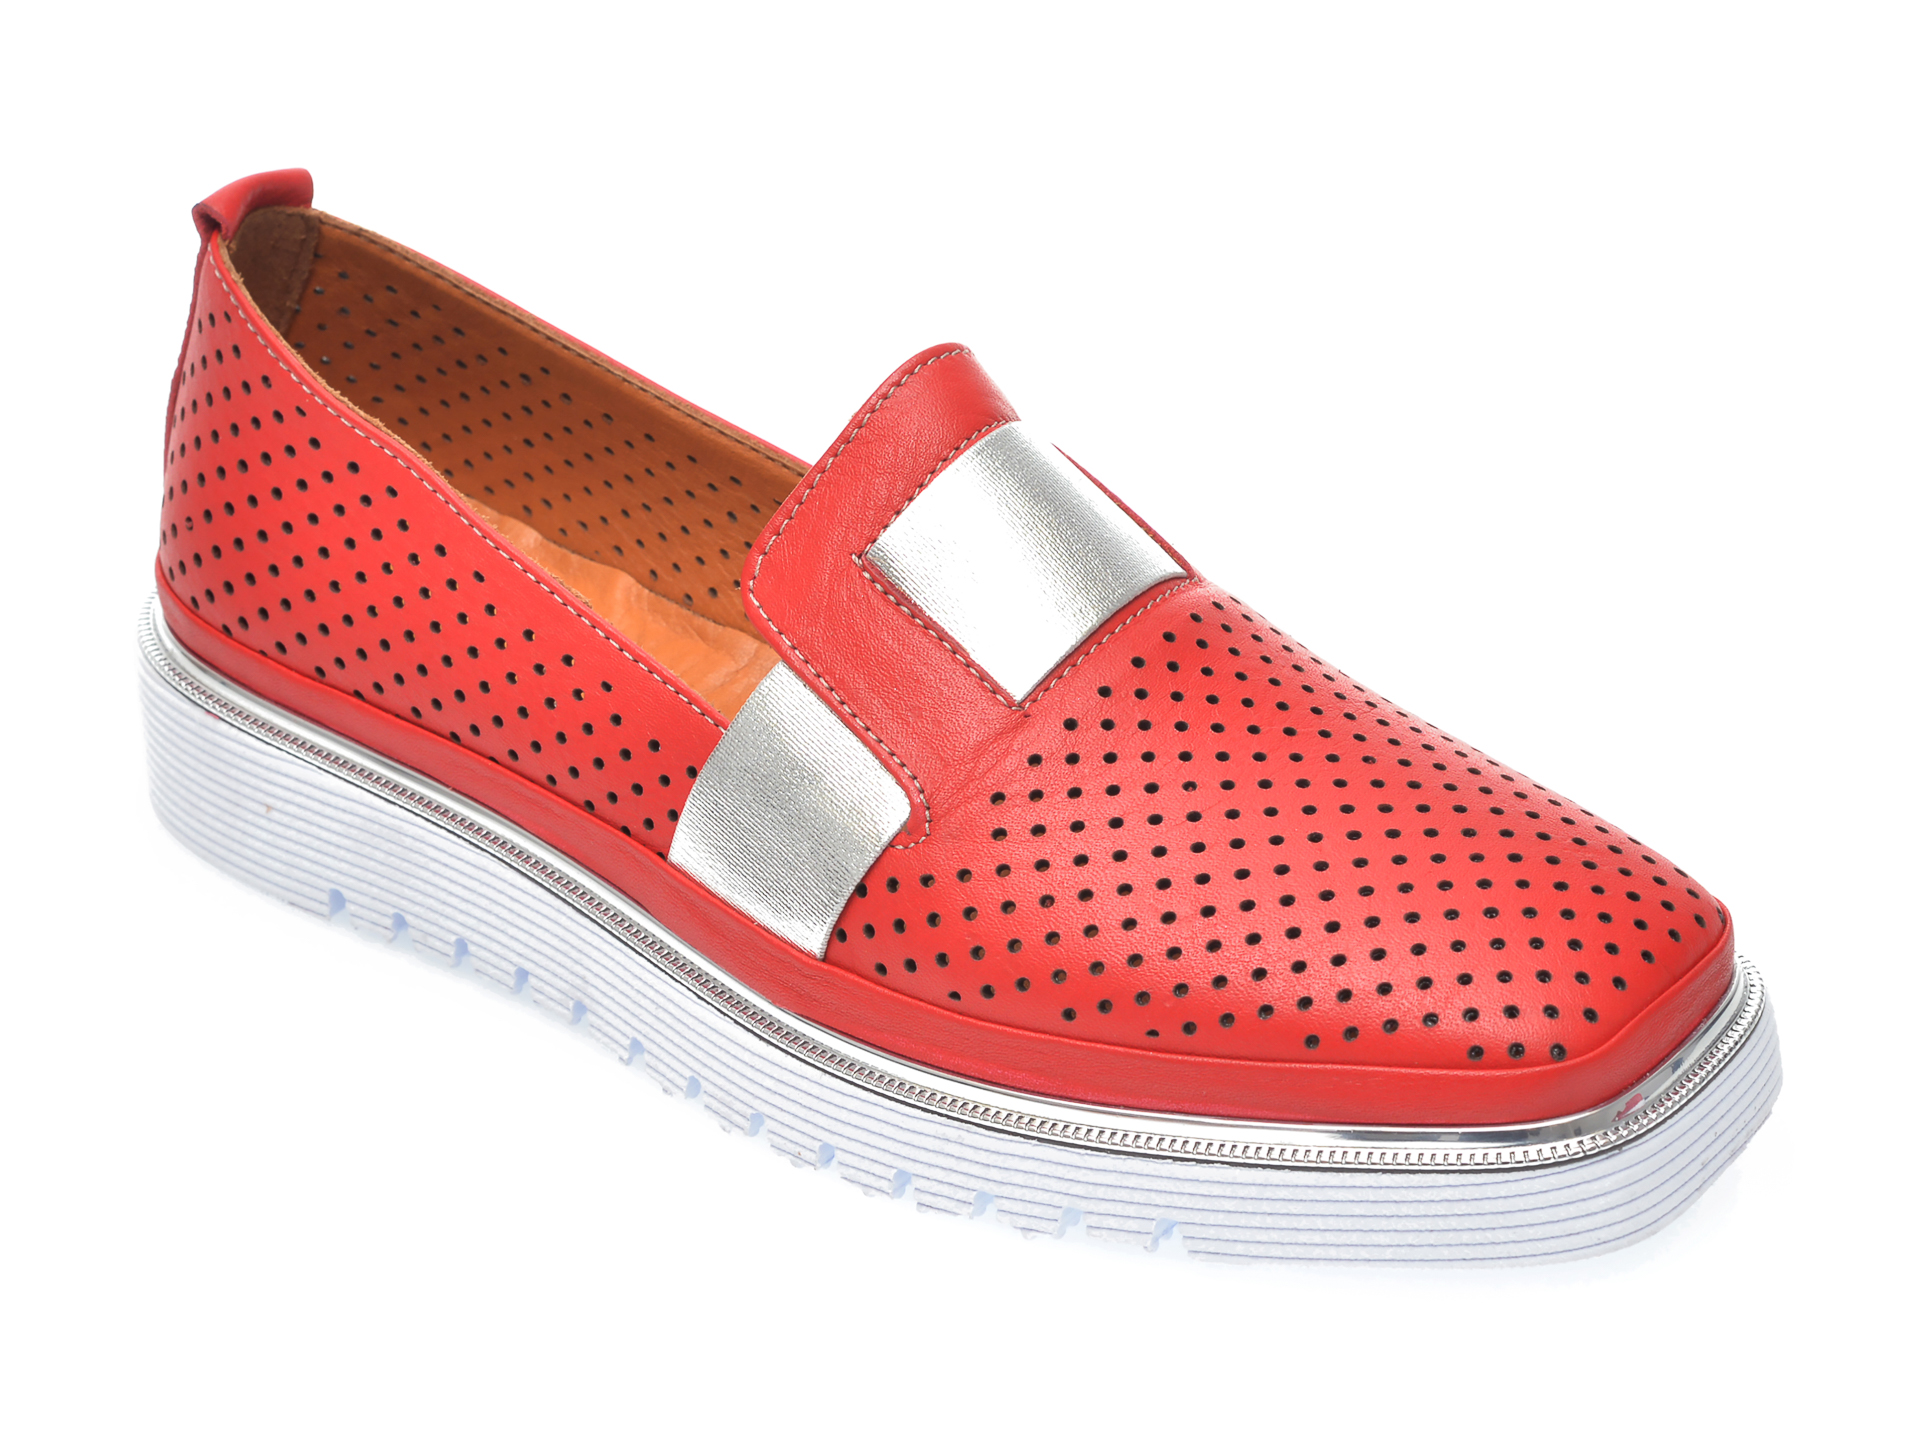 Pantofi FLAVIA PASSINI rosii, 993101, din piele naturala